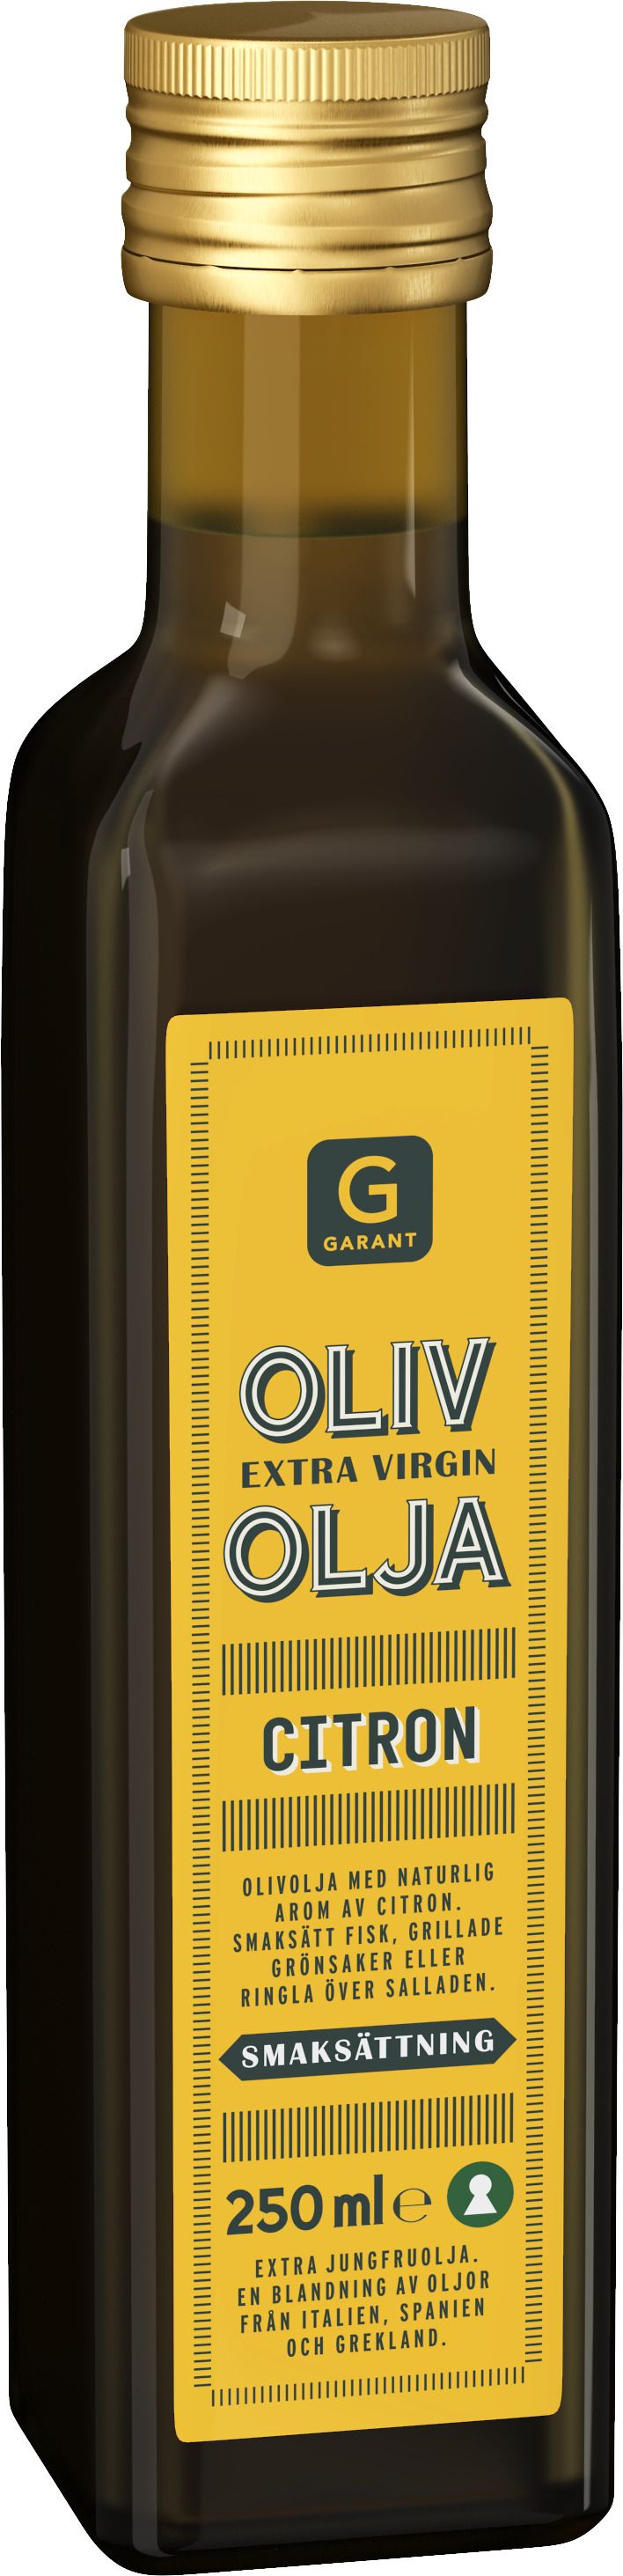 Garant_olivolja_citron